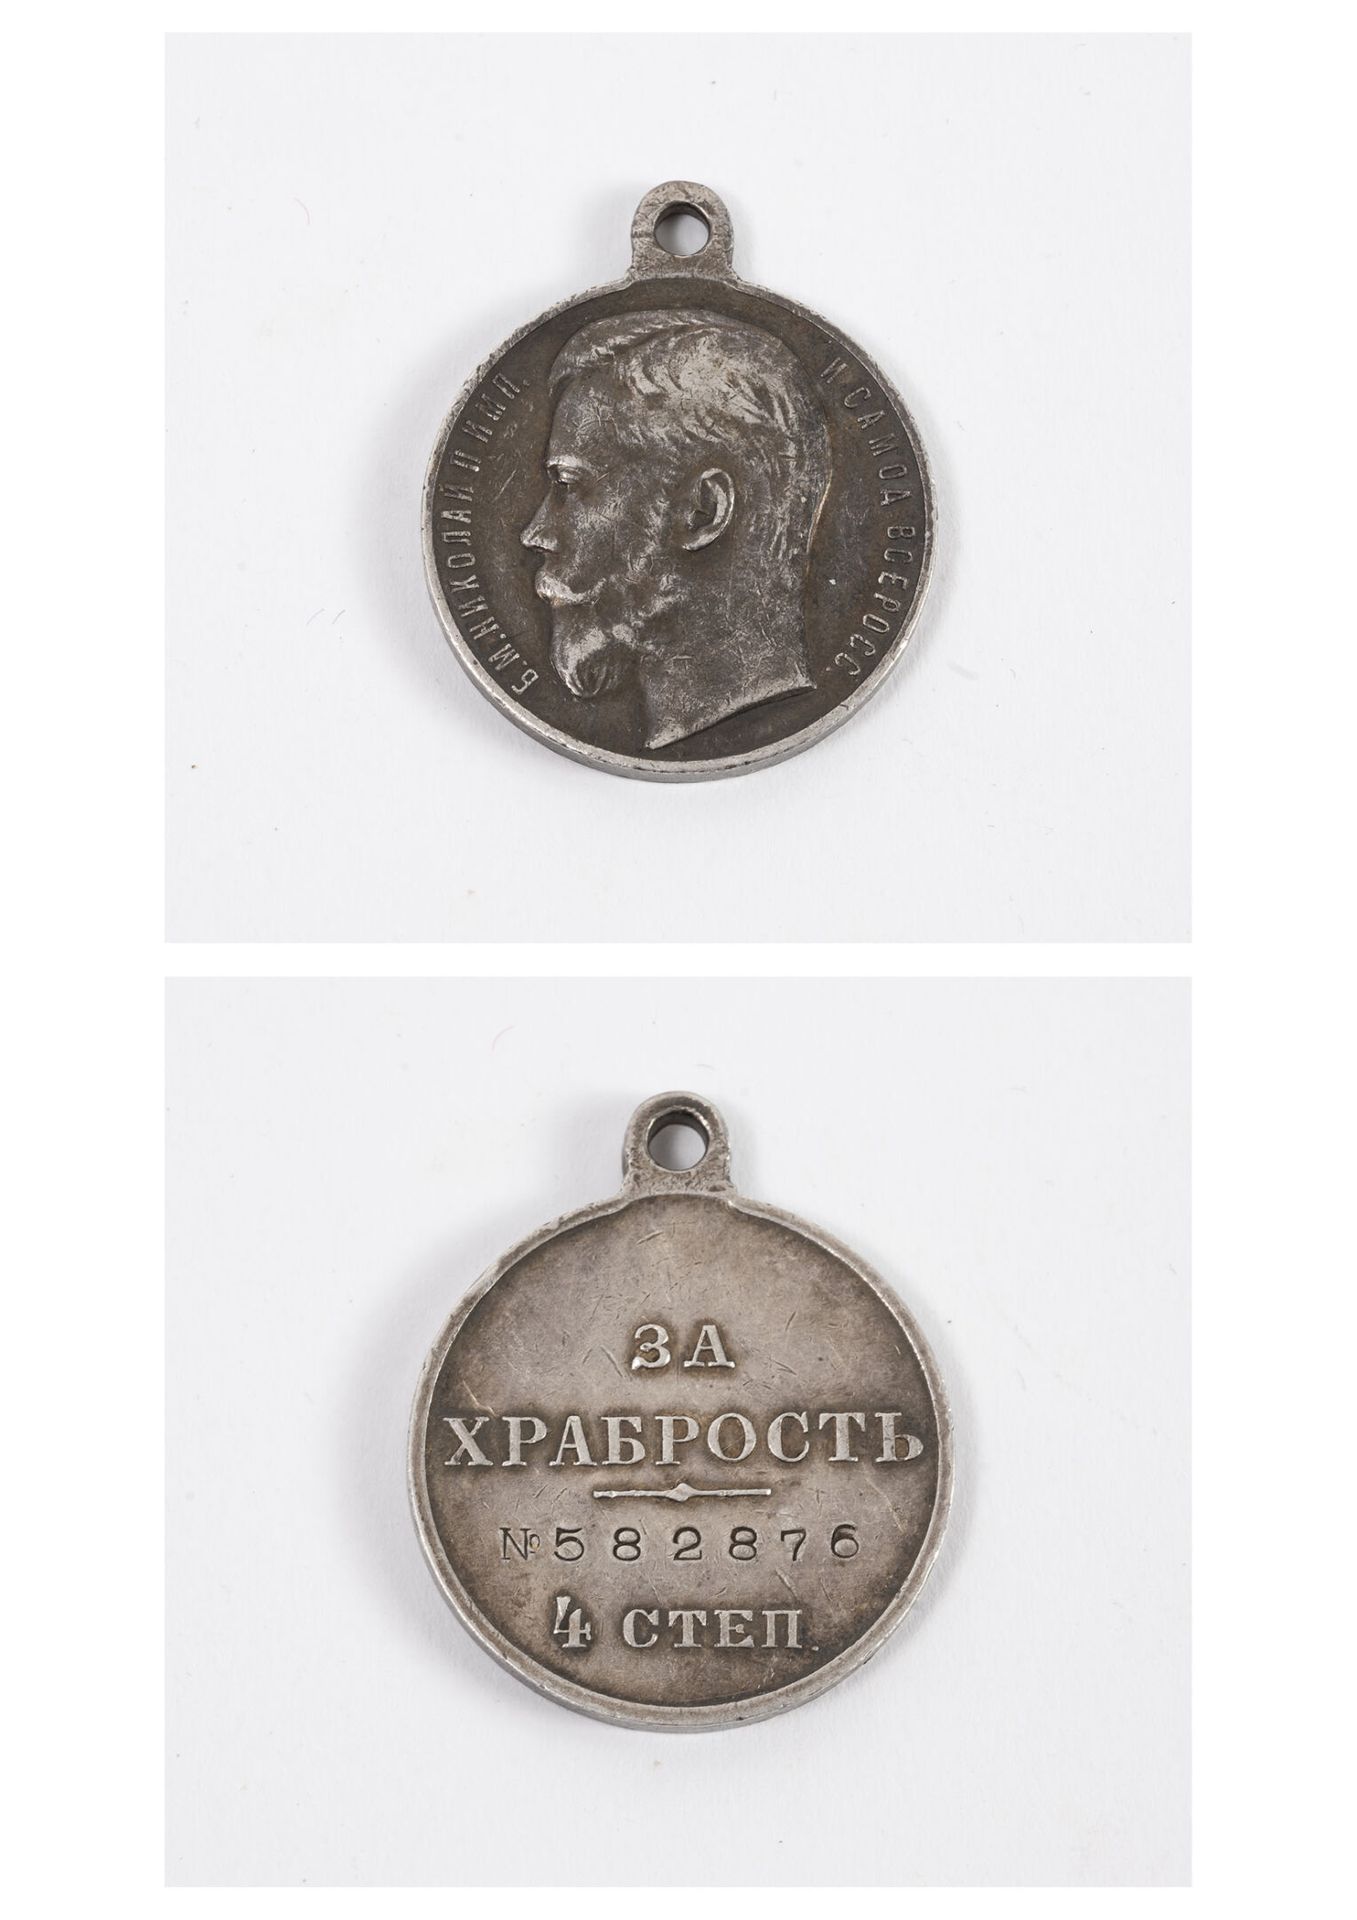 RUSSIE IMPERIALE 圣乔治勋章。 
四级银质奖章（最少800枚），（1913至1917年间）。
第582876号裁决。 
没有丝带。 
重量：15&hellip;